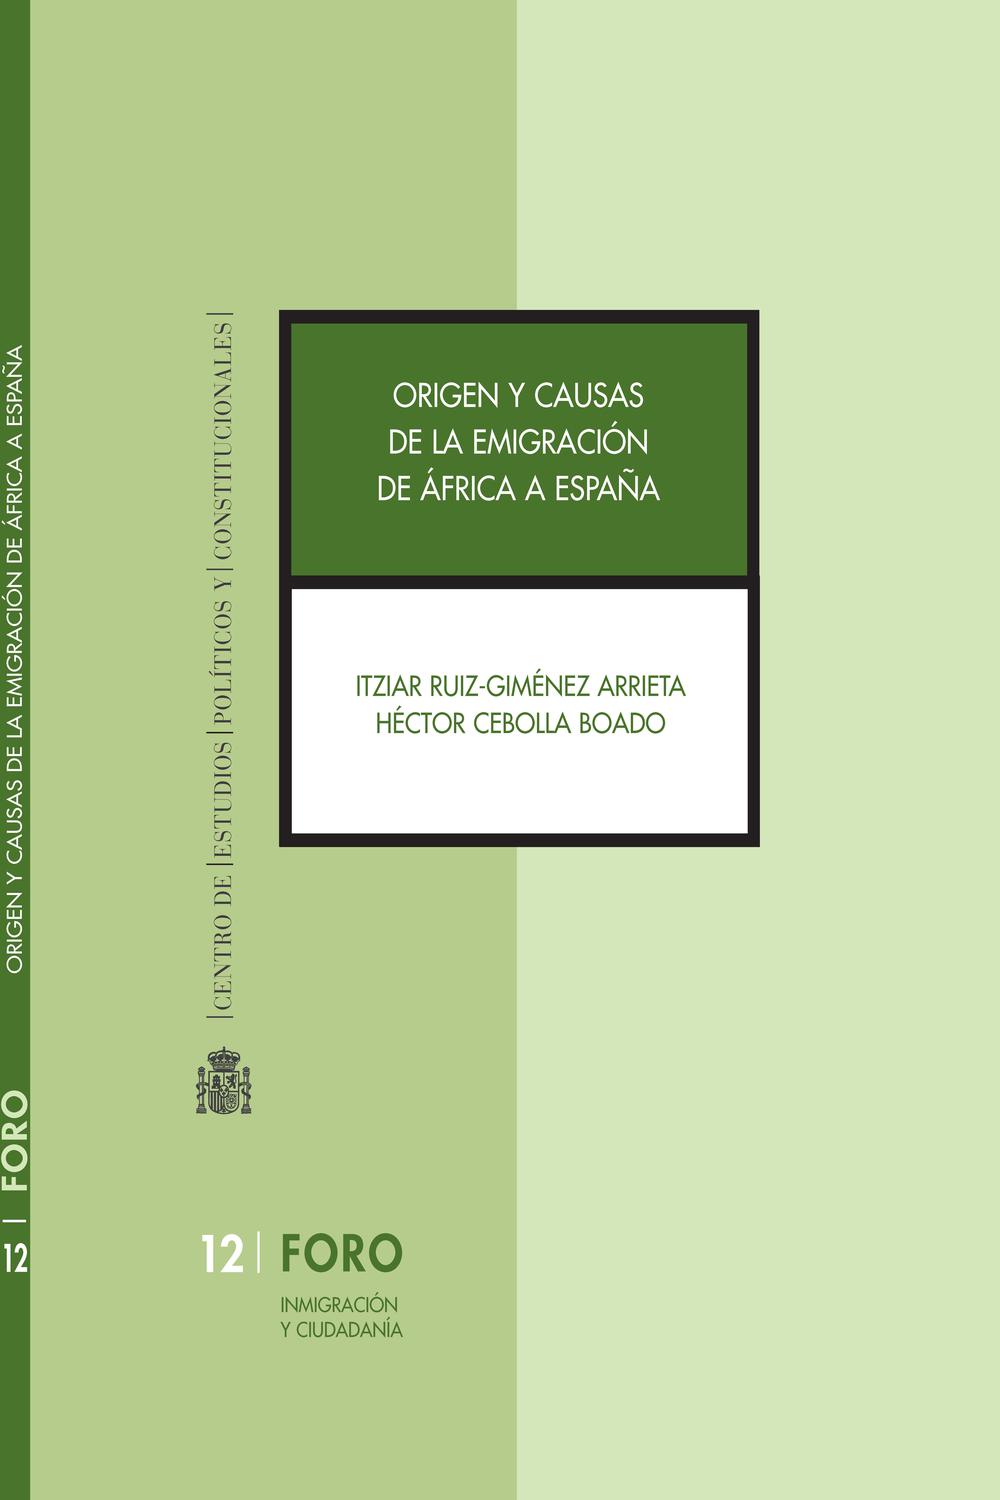 Origen y causas de la emigración de África a España - Itziar Ruiz-Giménez Arrieta, Héctor Cebolla Boado